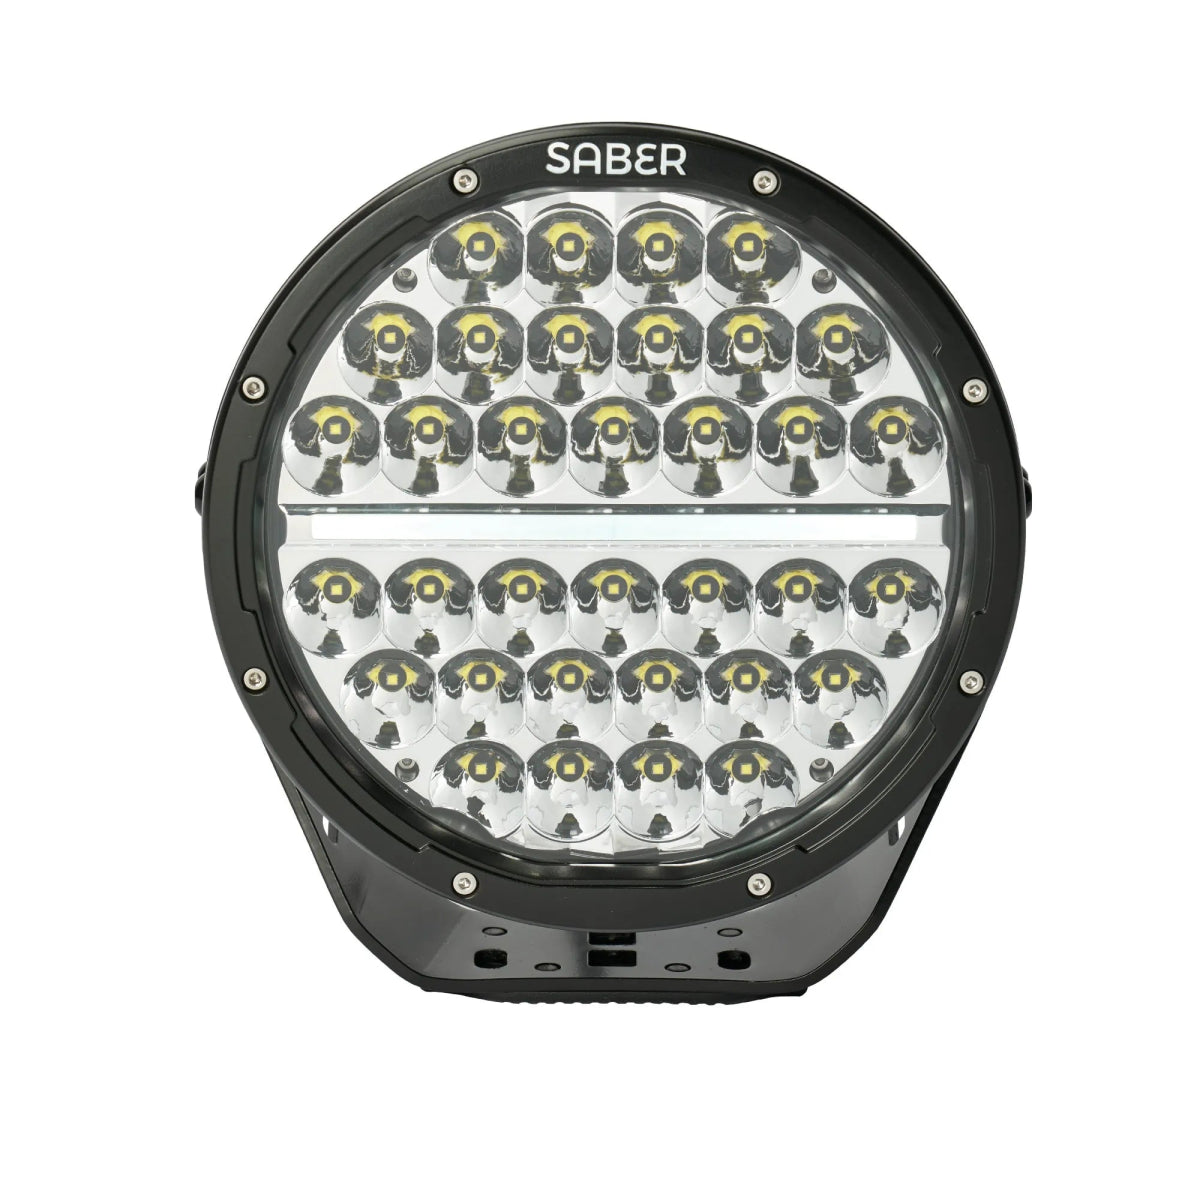 Saber 9" Driving Light - Spot Beam | Saber Offroad | A247 Gear